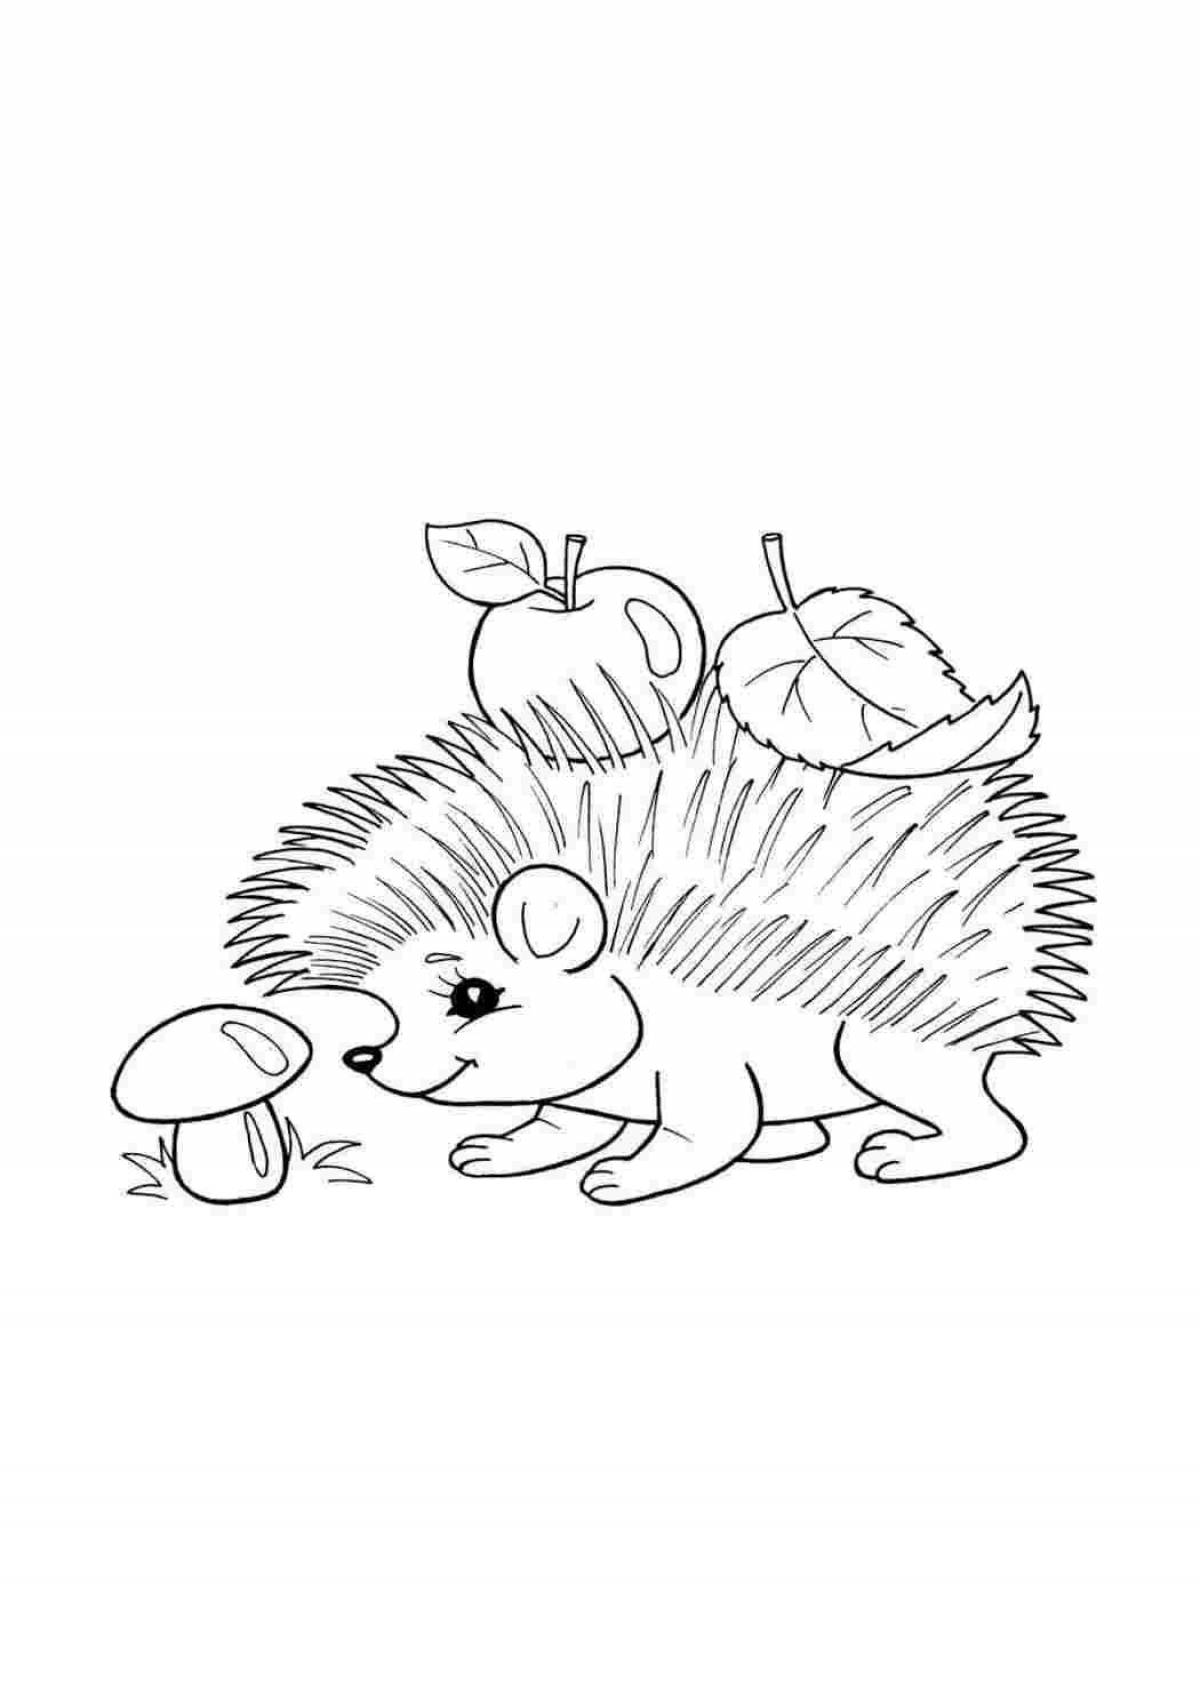 Brilliant hedgehog drawing